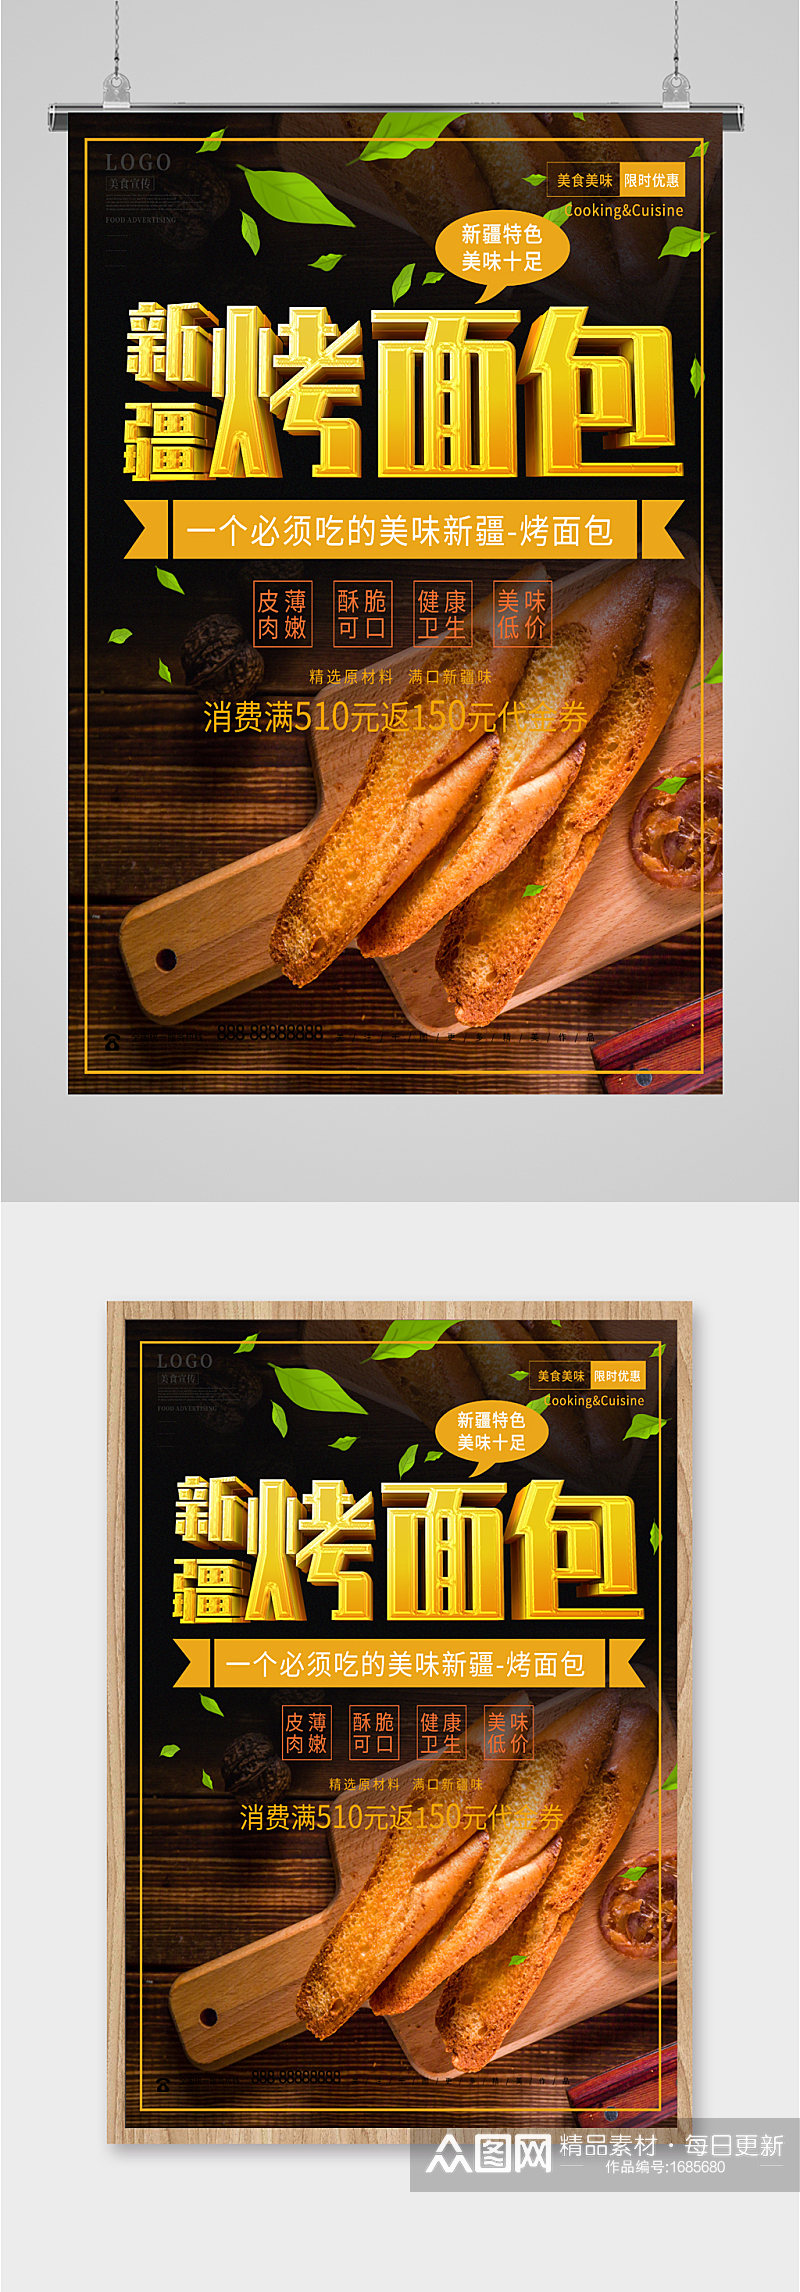 新疆烤面包宣传海报素材